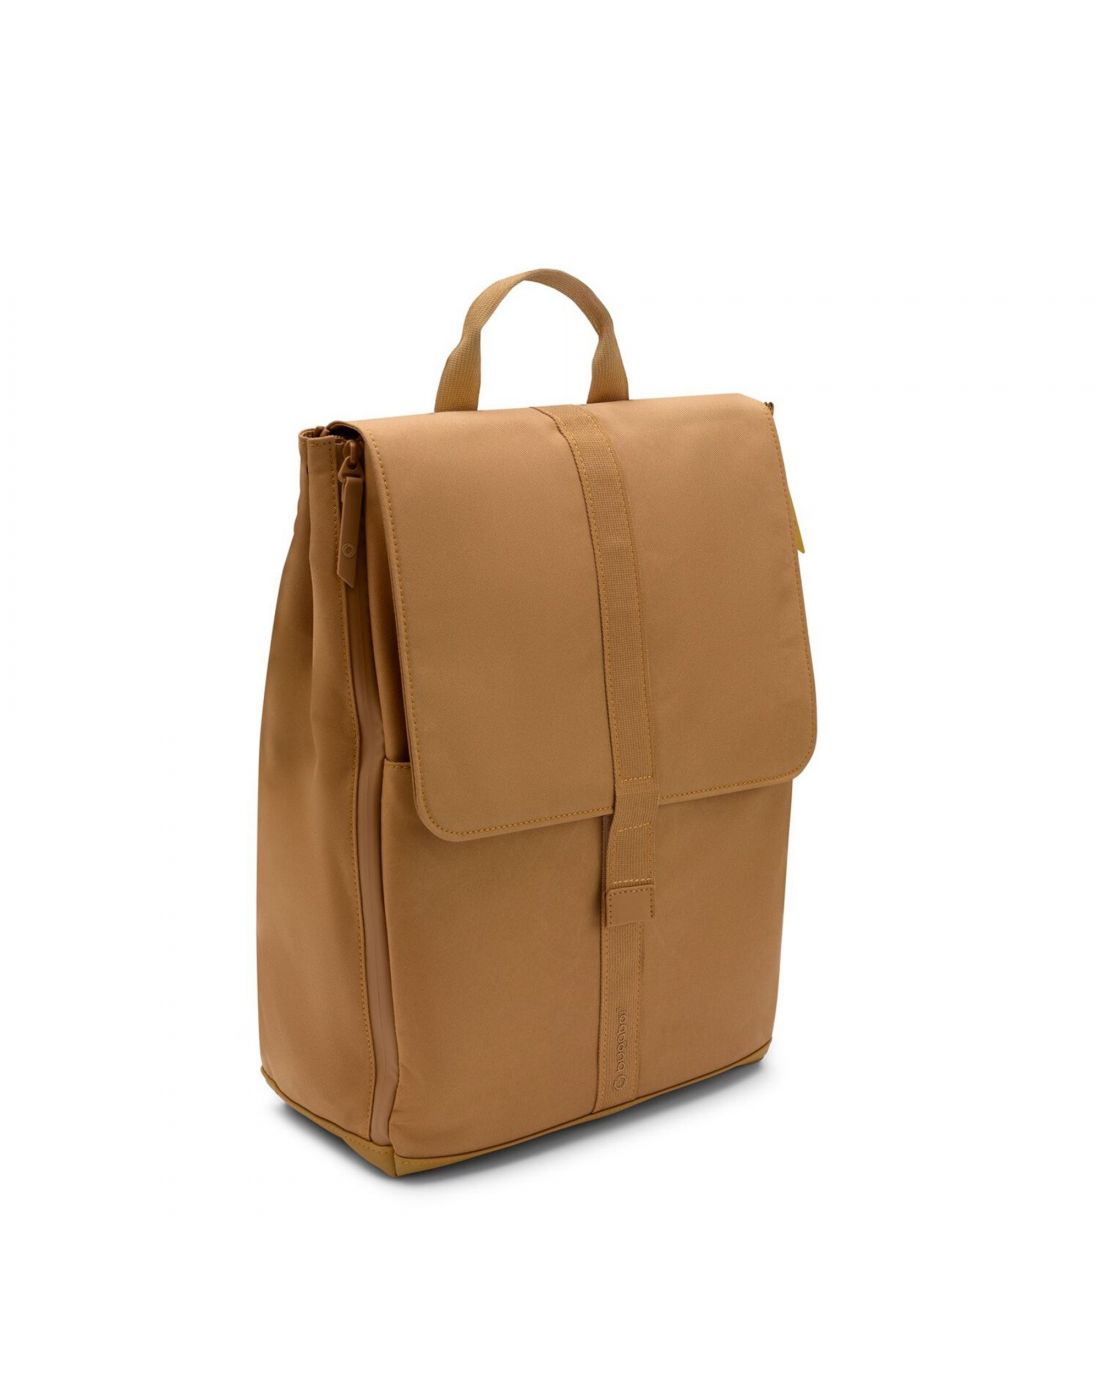 Τσάντα Αλλαγής Bugaboo Backpack Caramel Brown